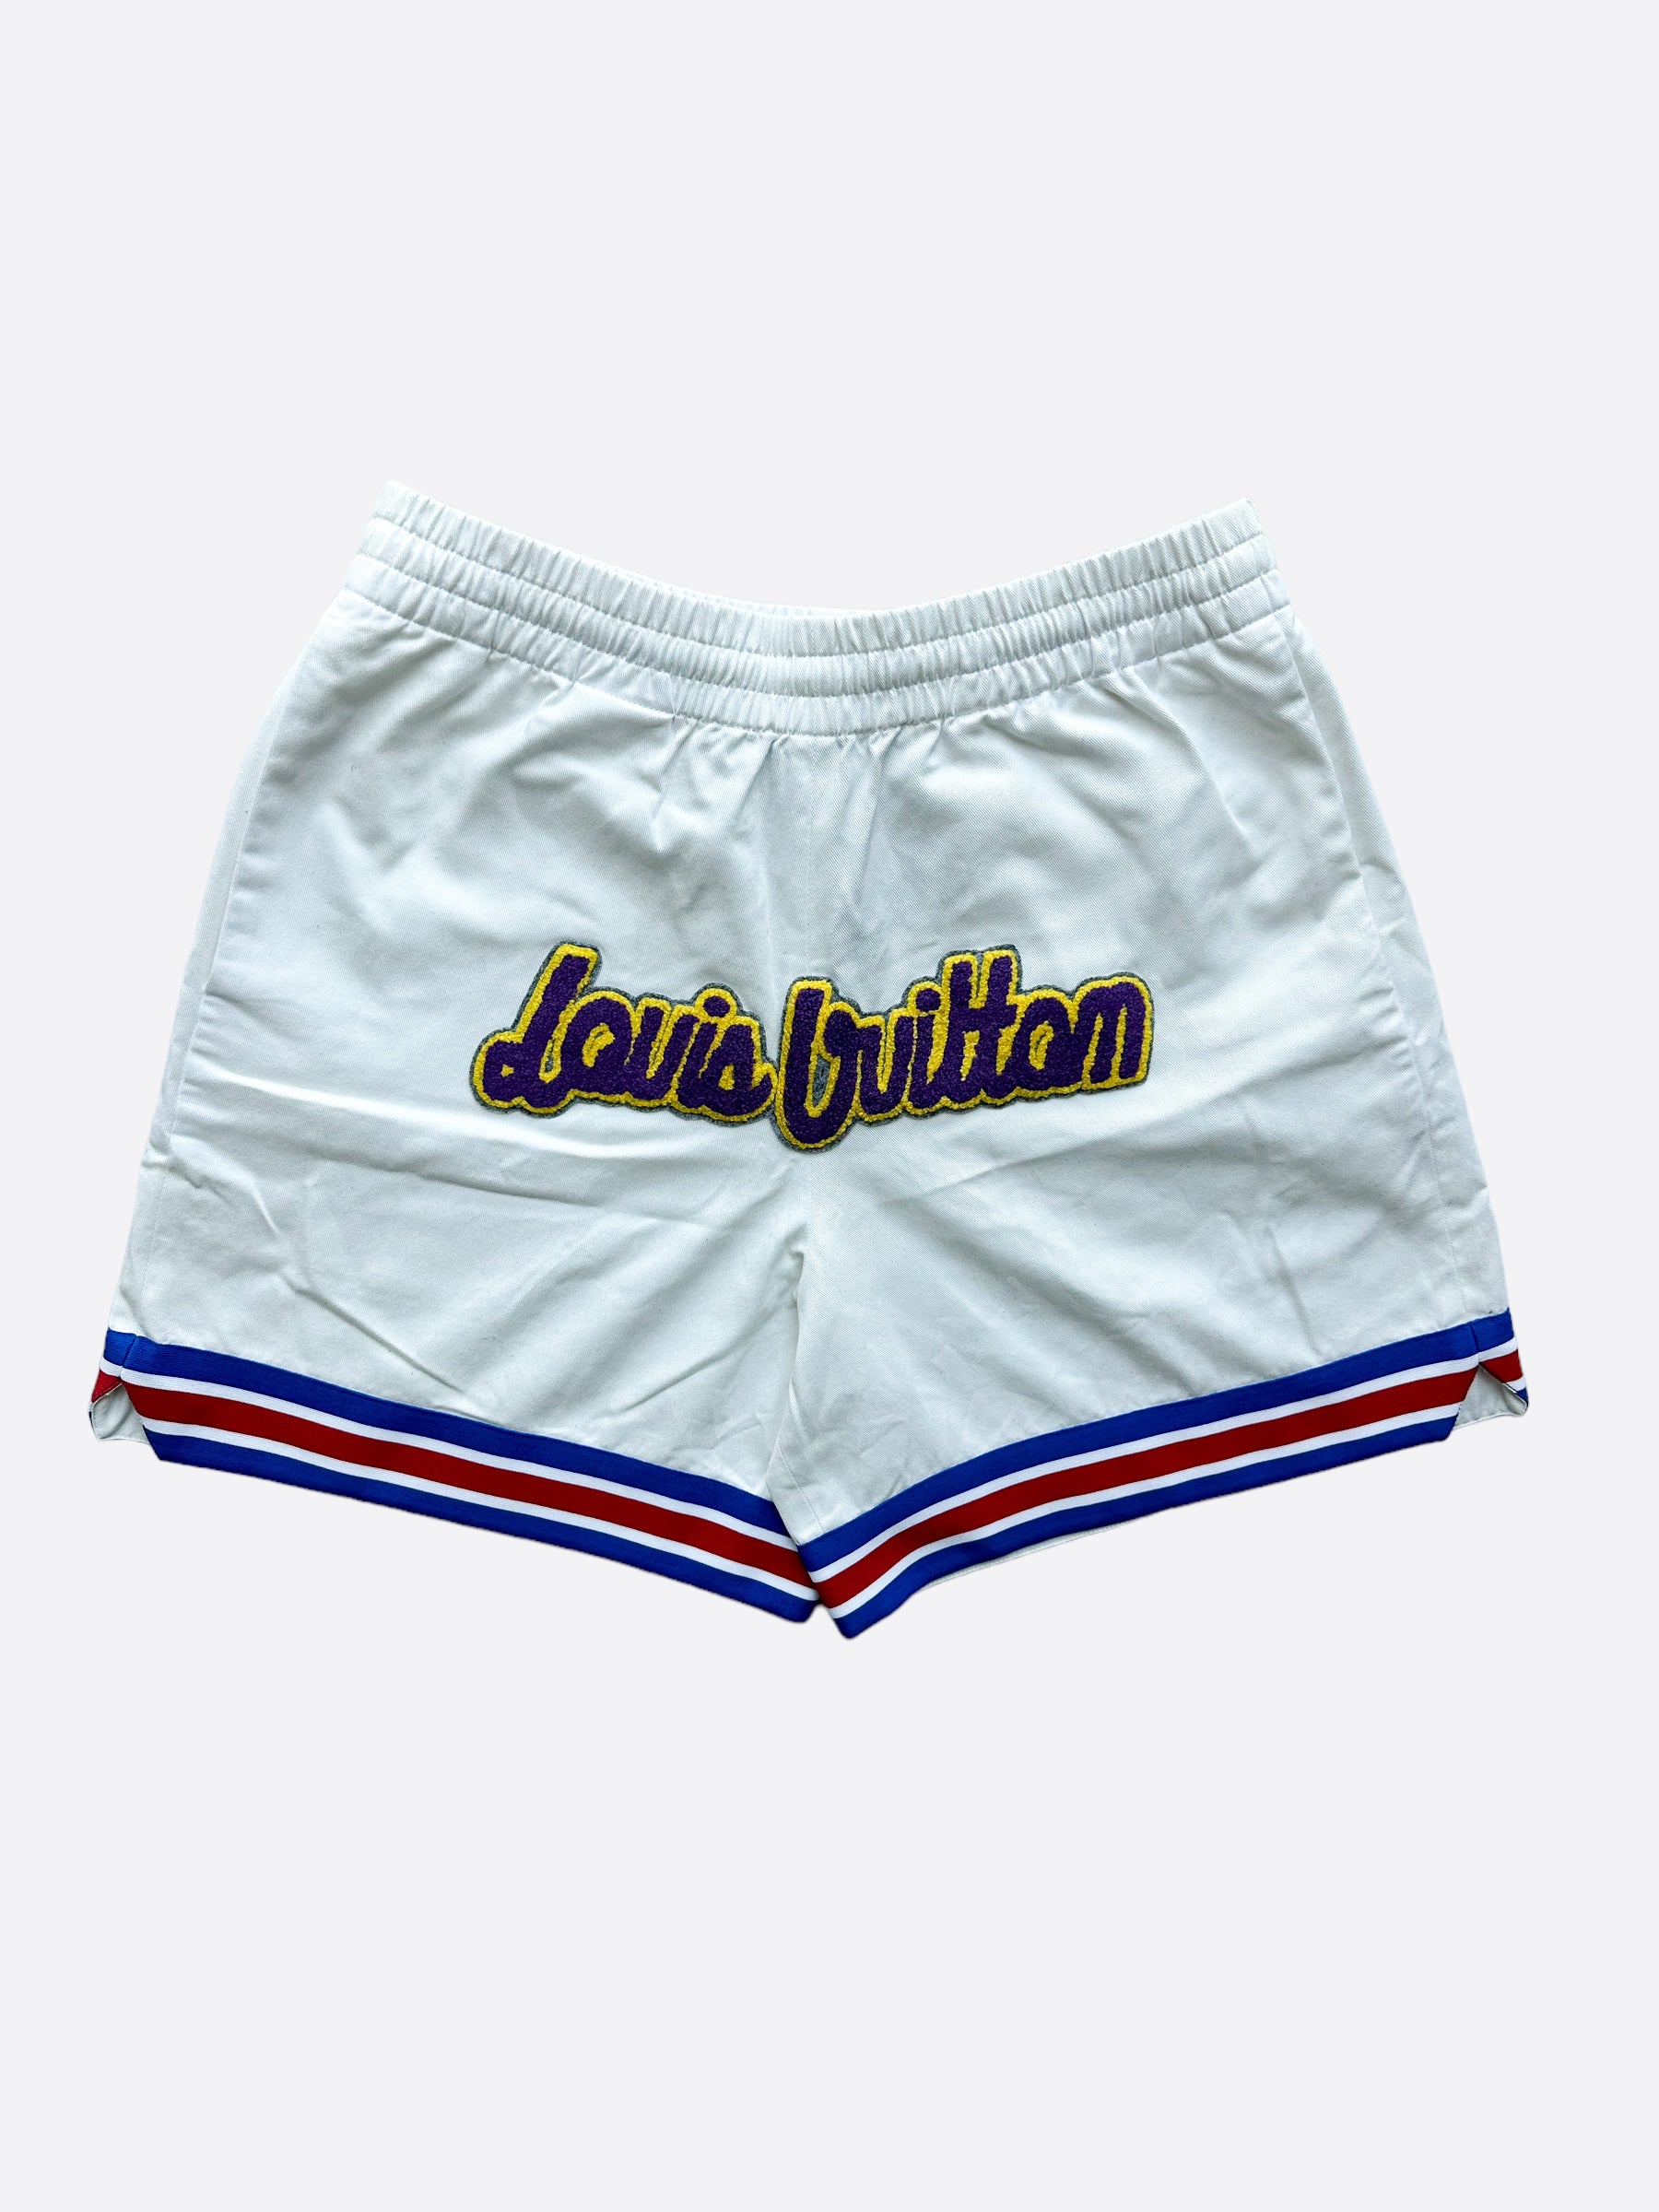 white louis vuitton shorts